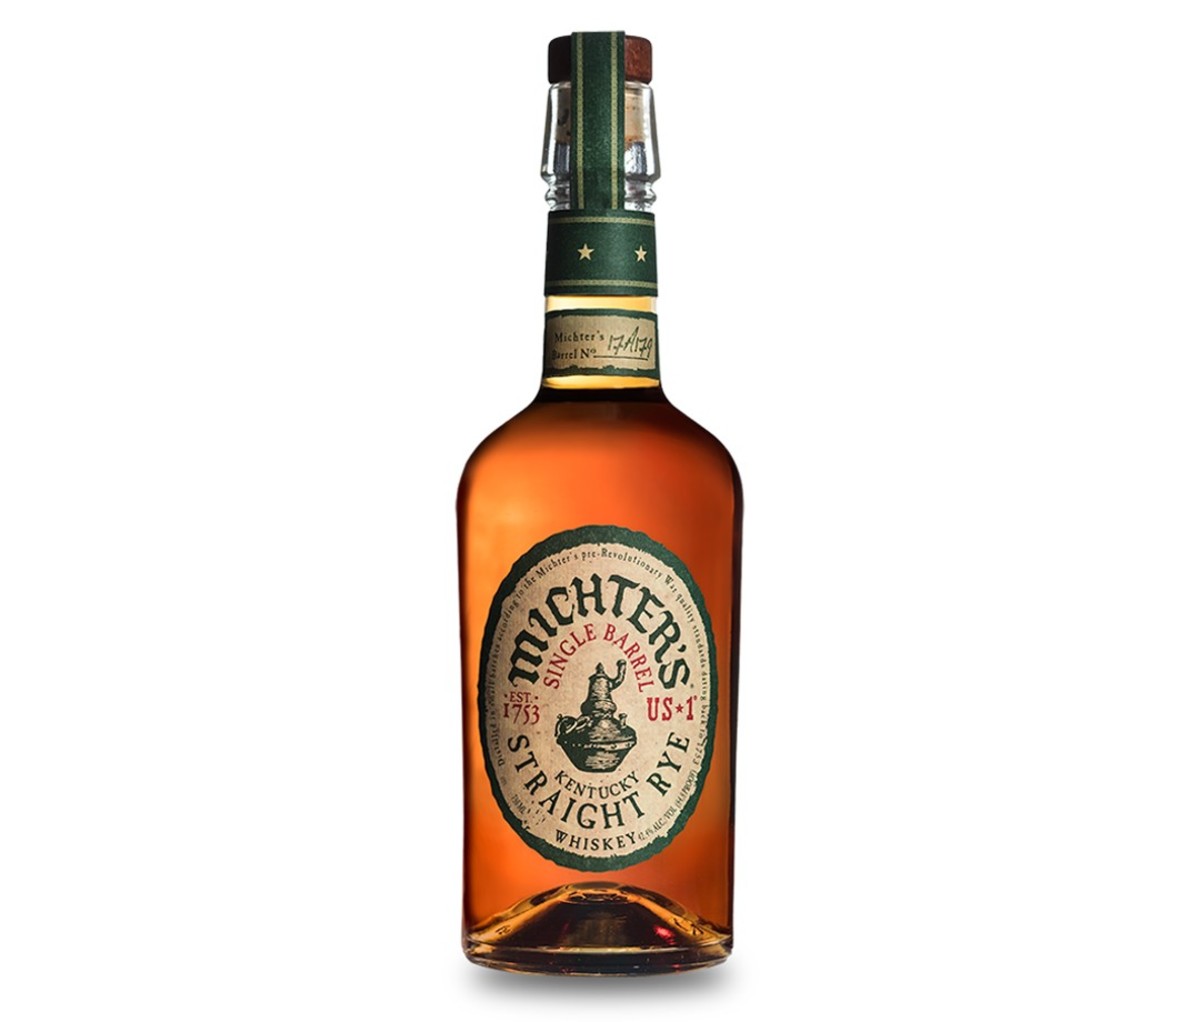 A bottle of Michter’s US-1 Kentucky Straight Bourbon